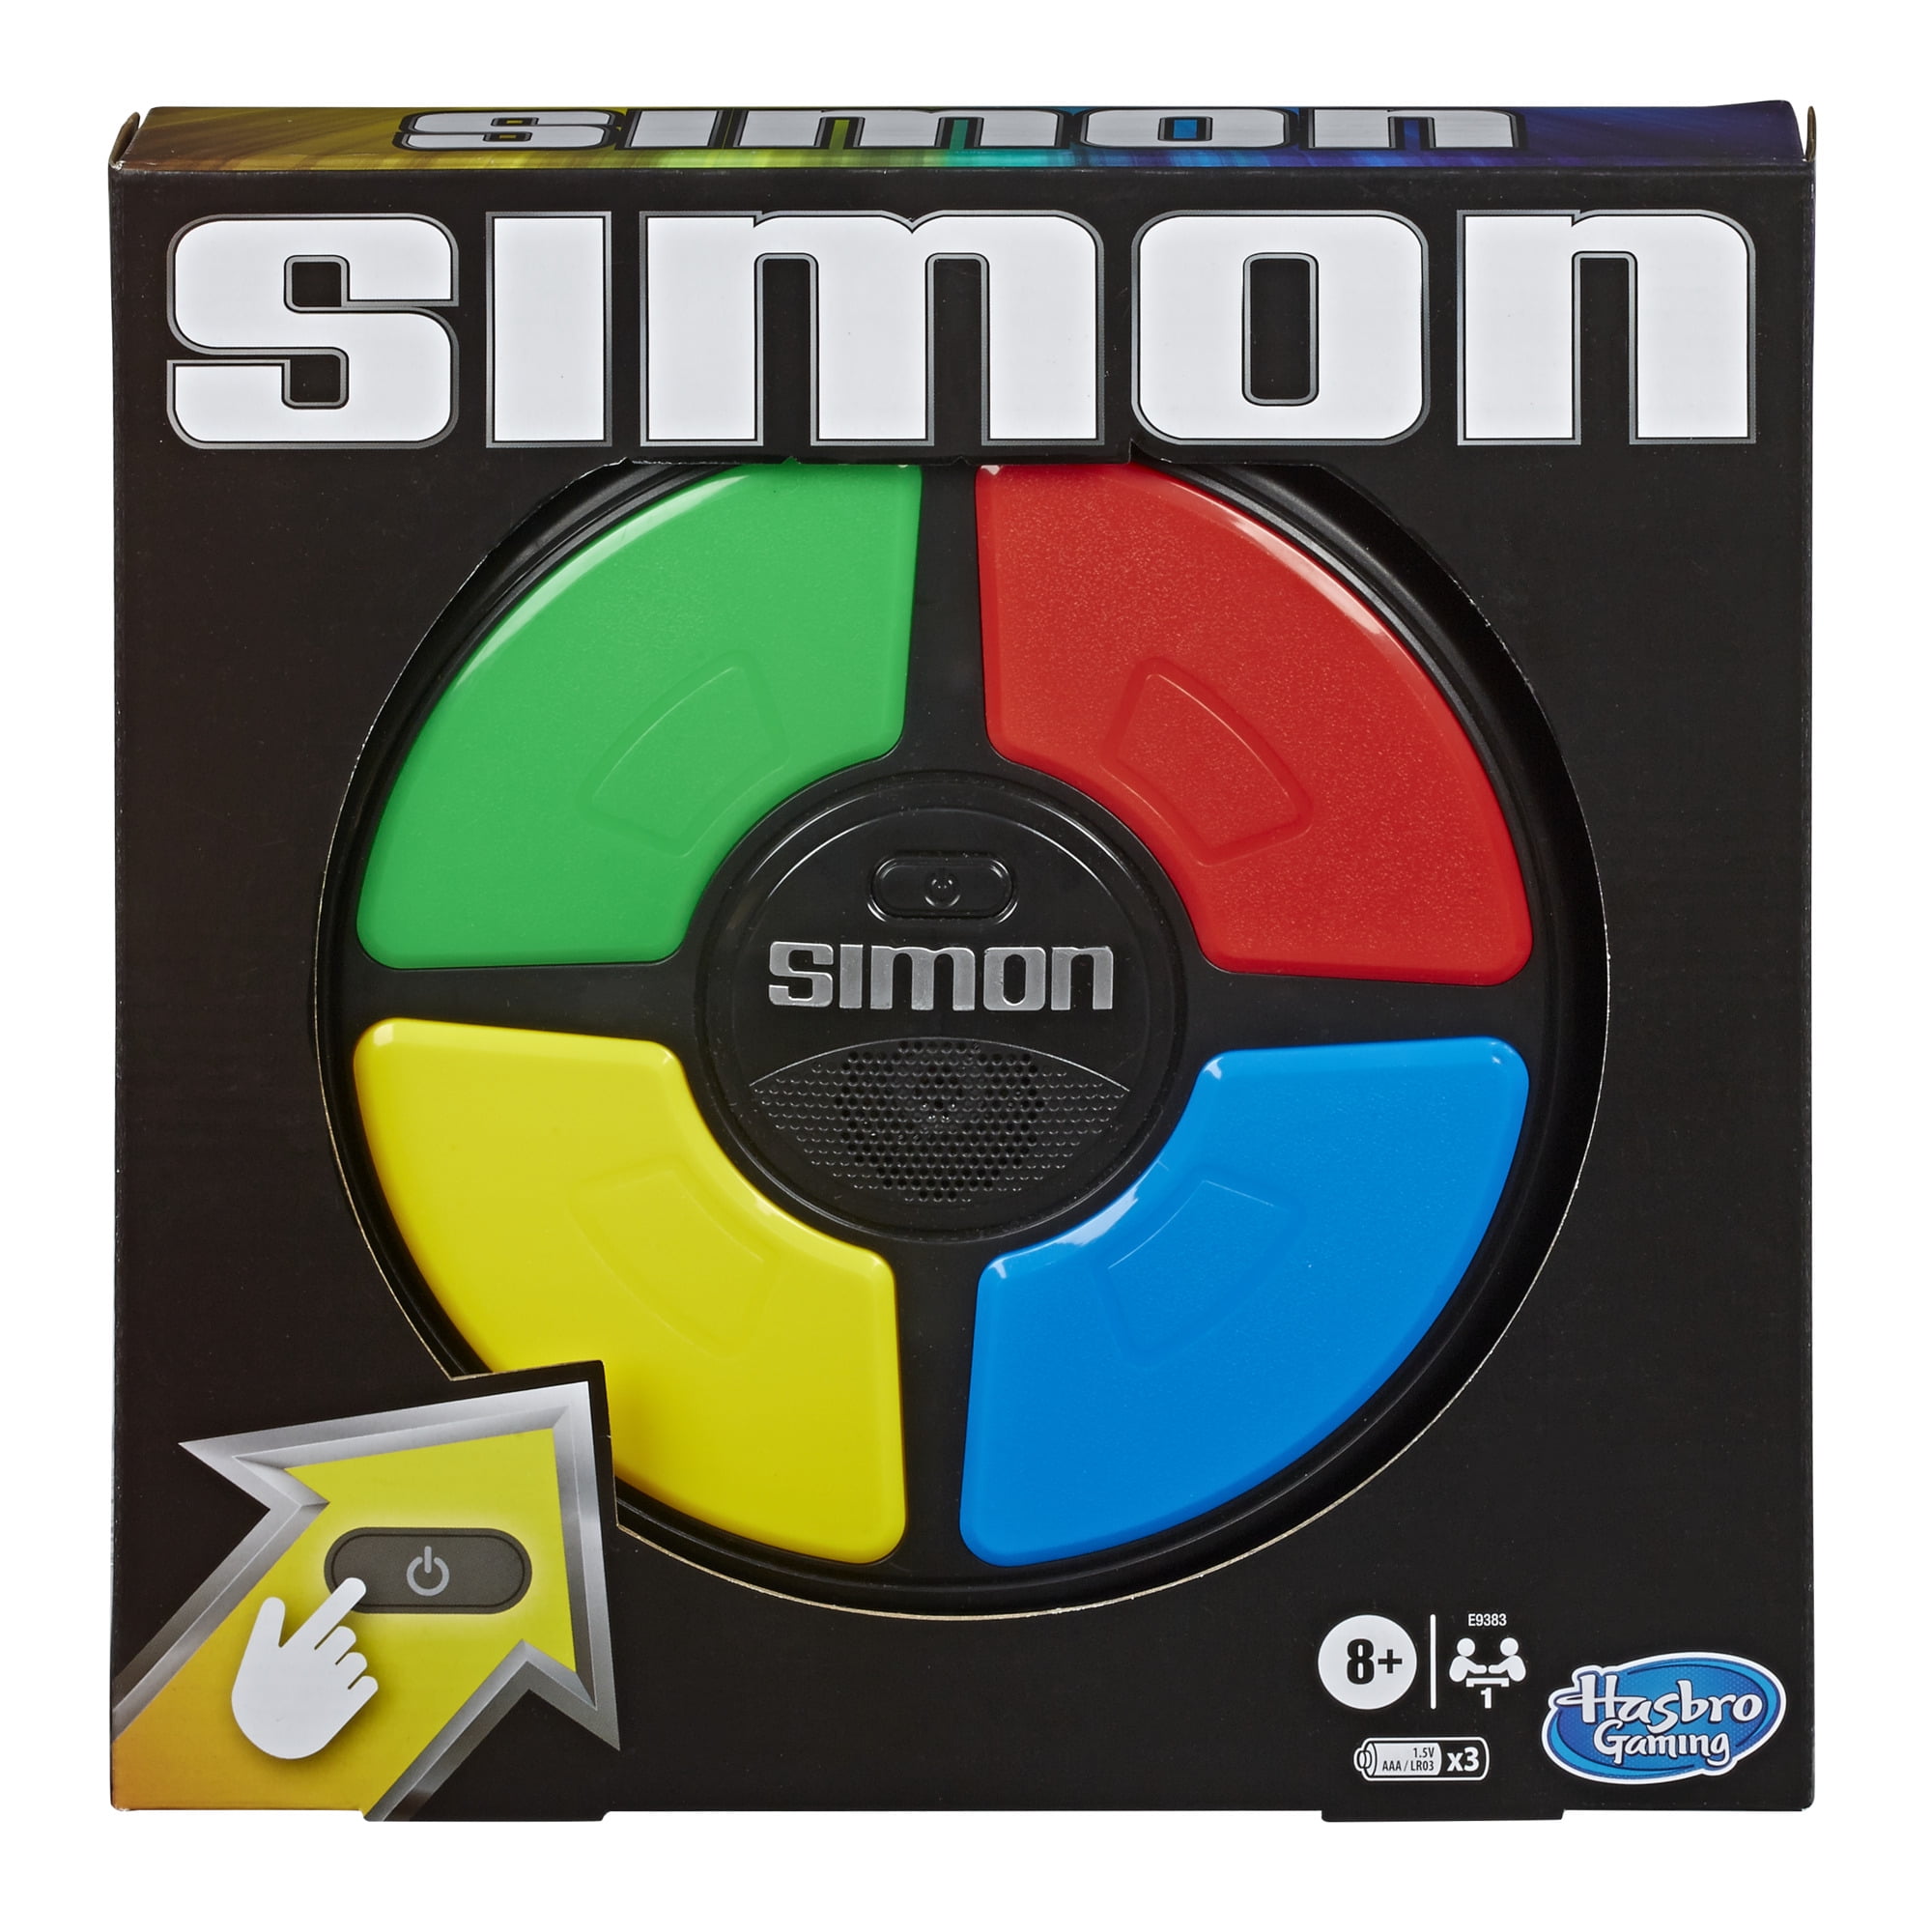 Simon Swipe Electronic Memory Game Hasbro Classic Family Fun Brand New In Box 